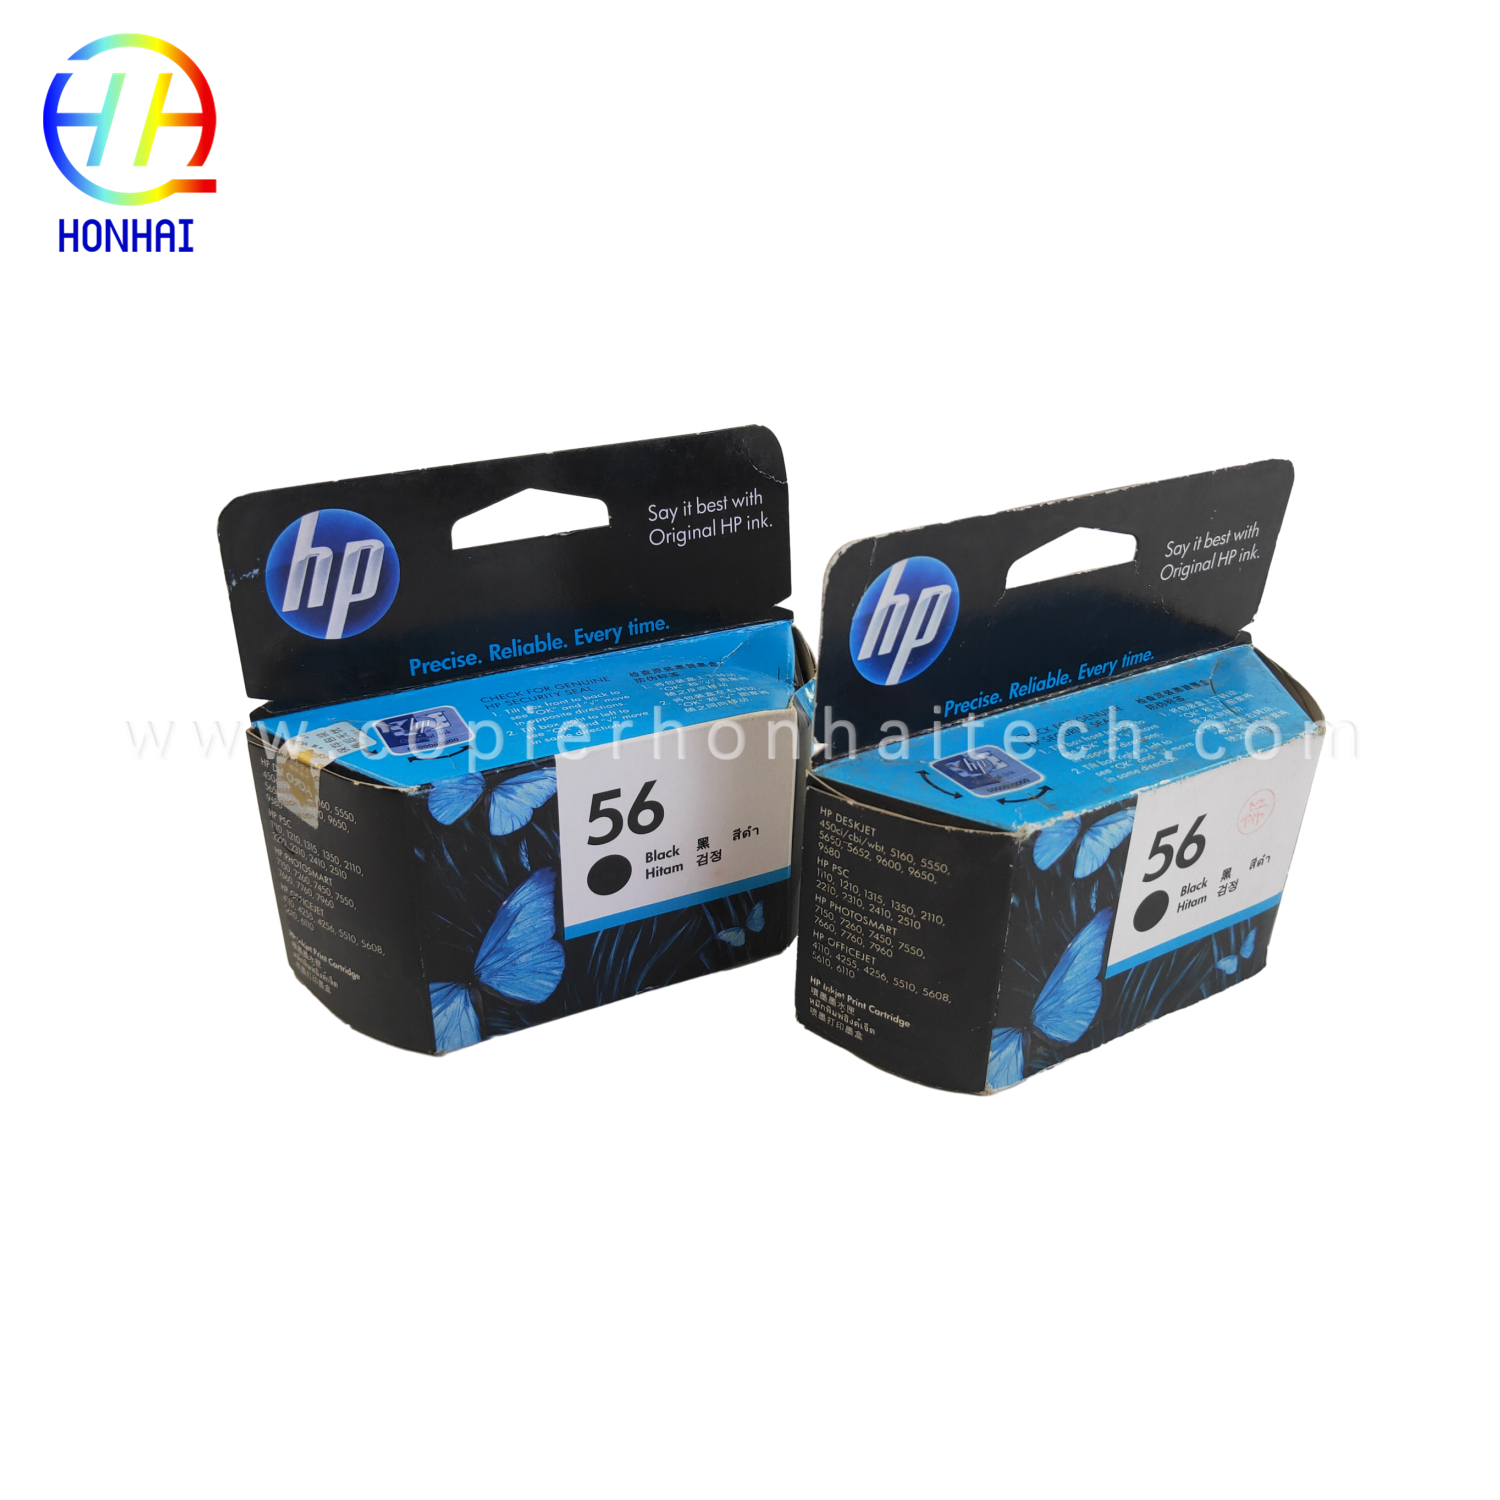 Cartuccia d'inchiostro nera originale per stampante 56 per HP Deskjet 5550 5551 5552